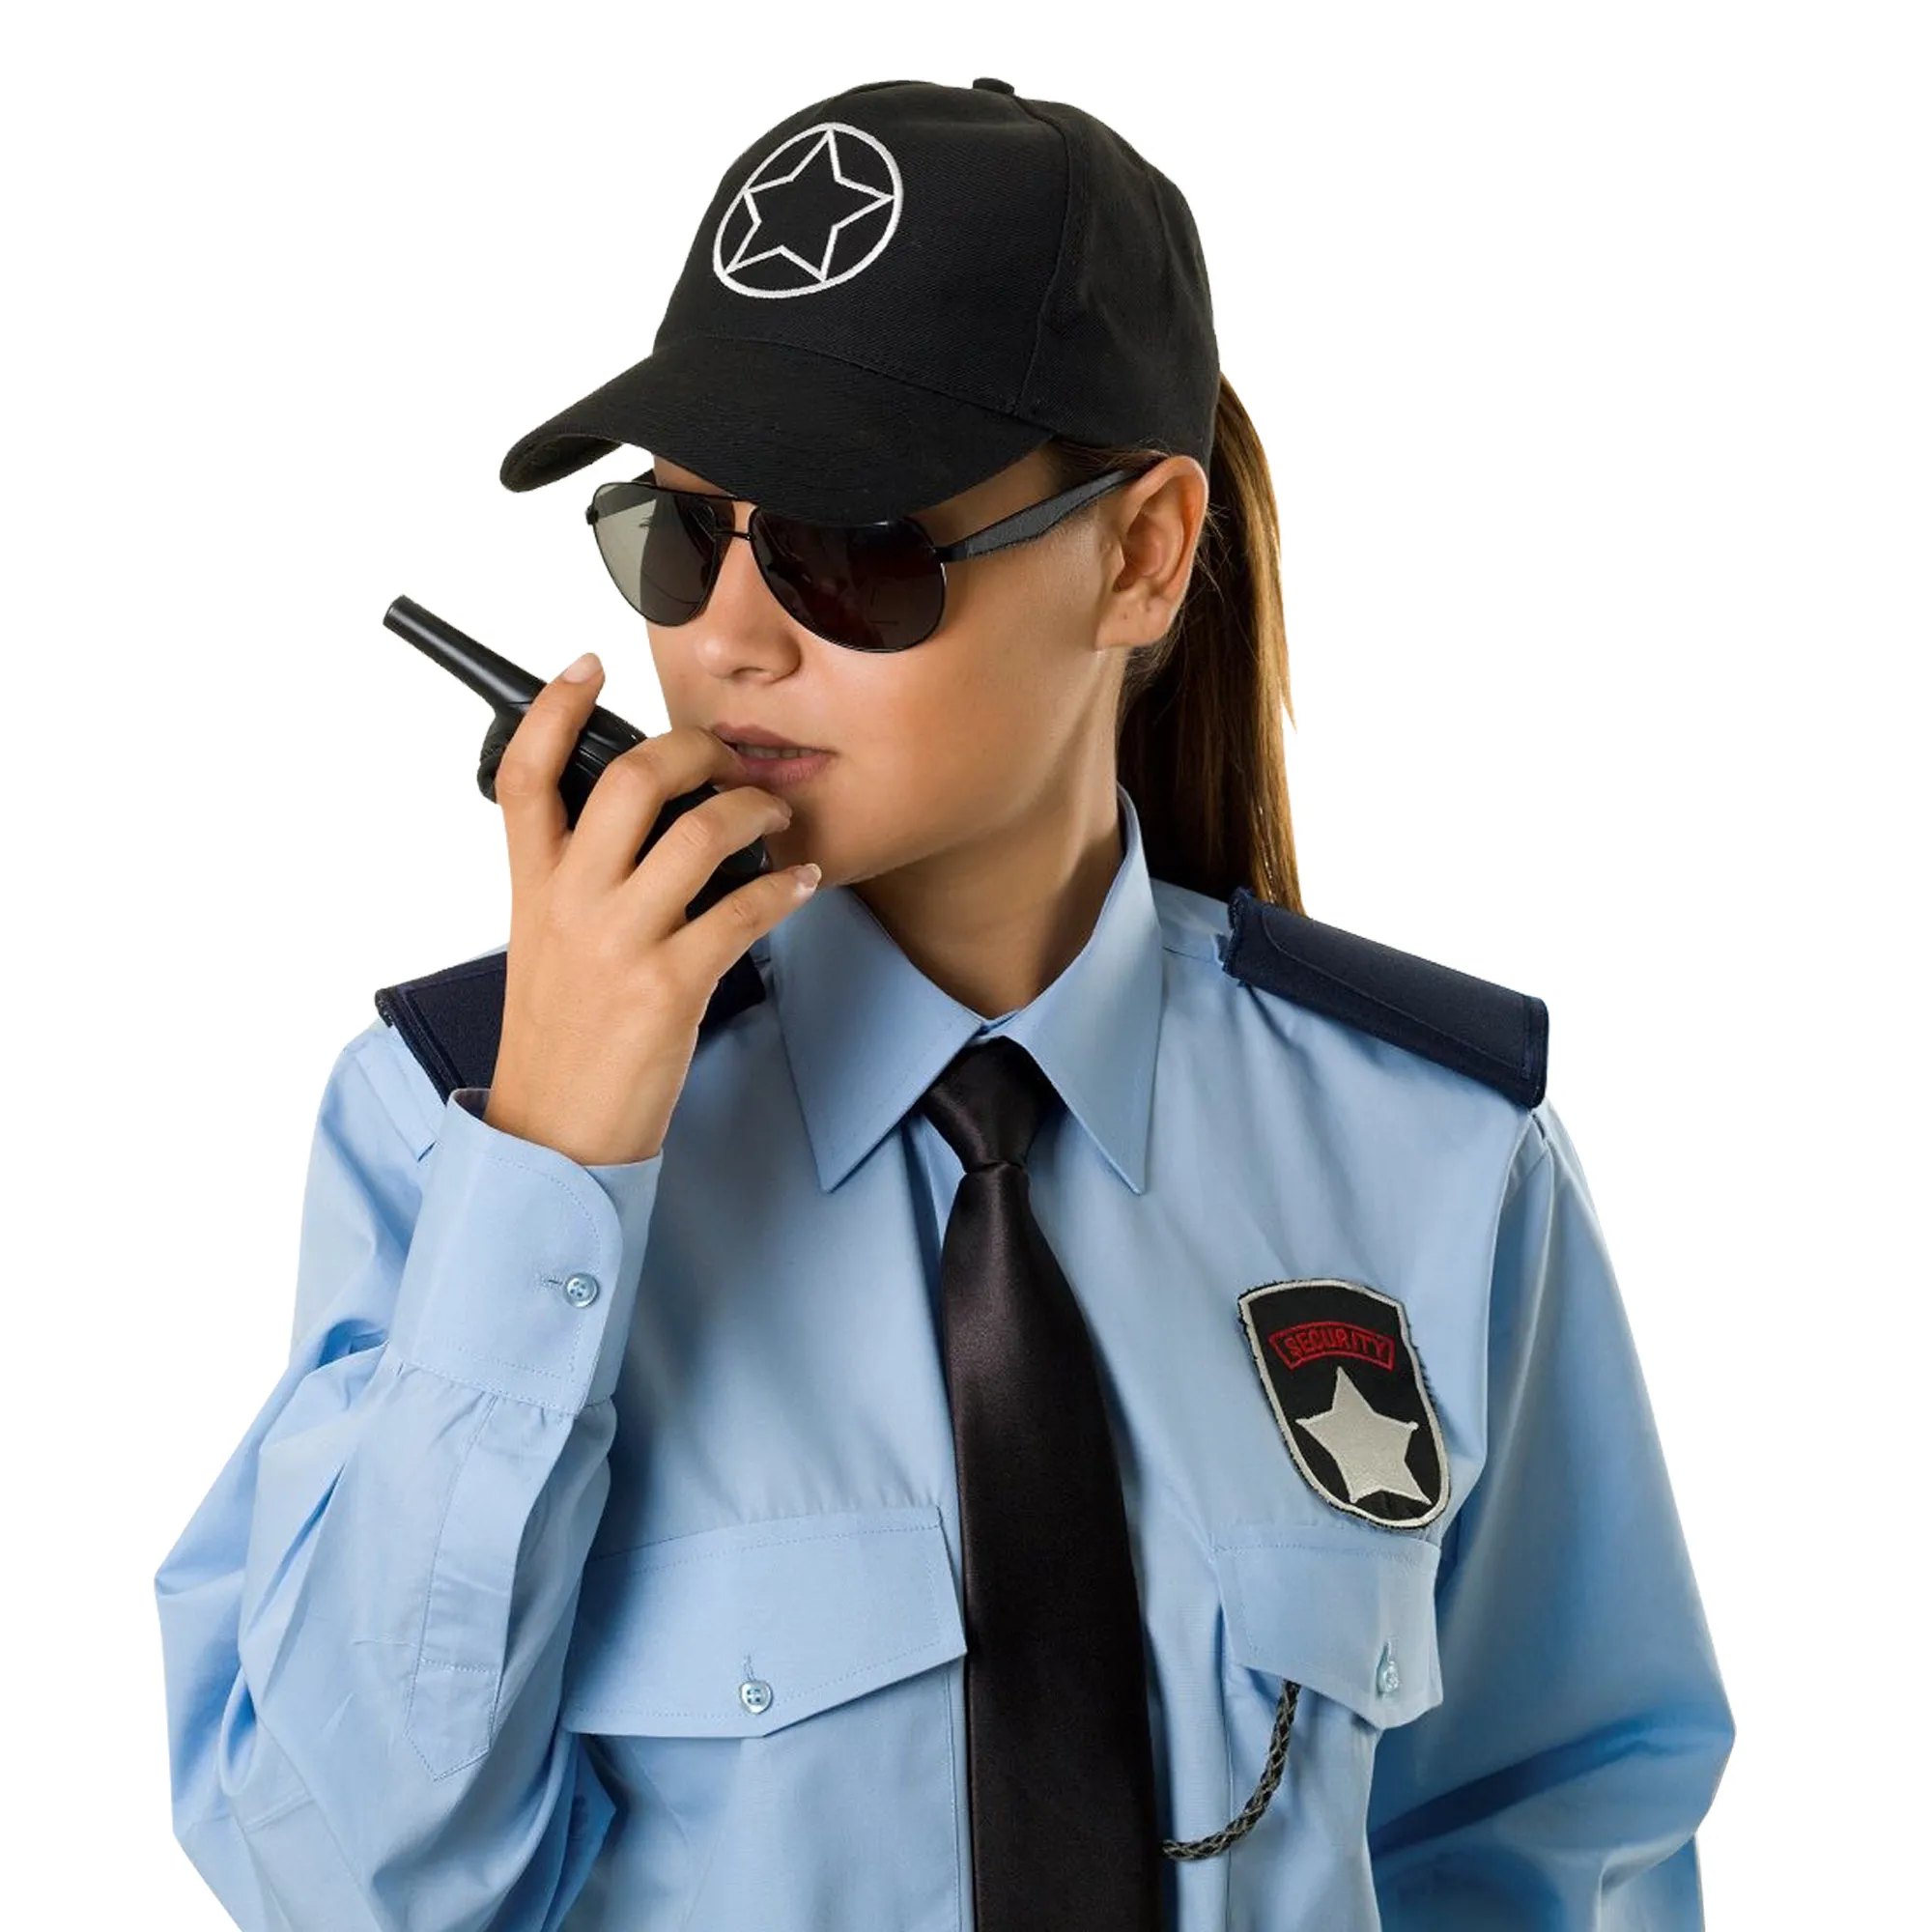 Спецодежда и униформа для охраны и охранных стуктур#3